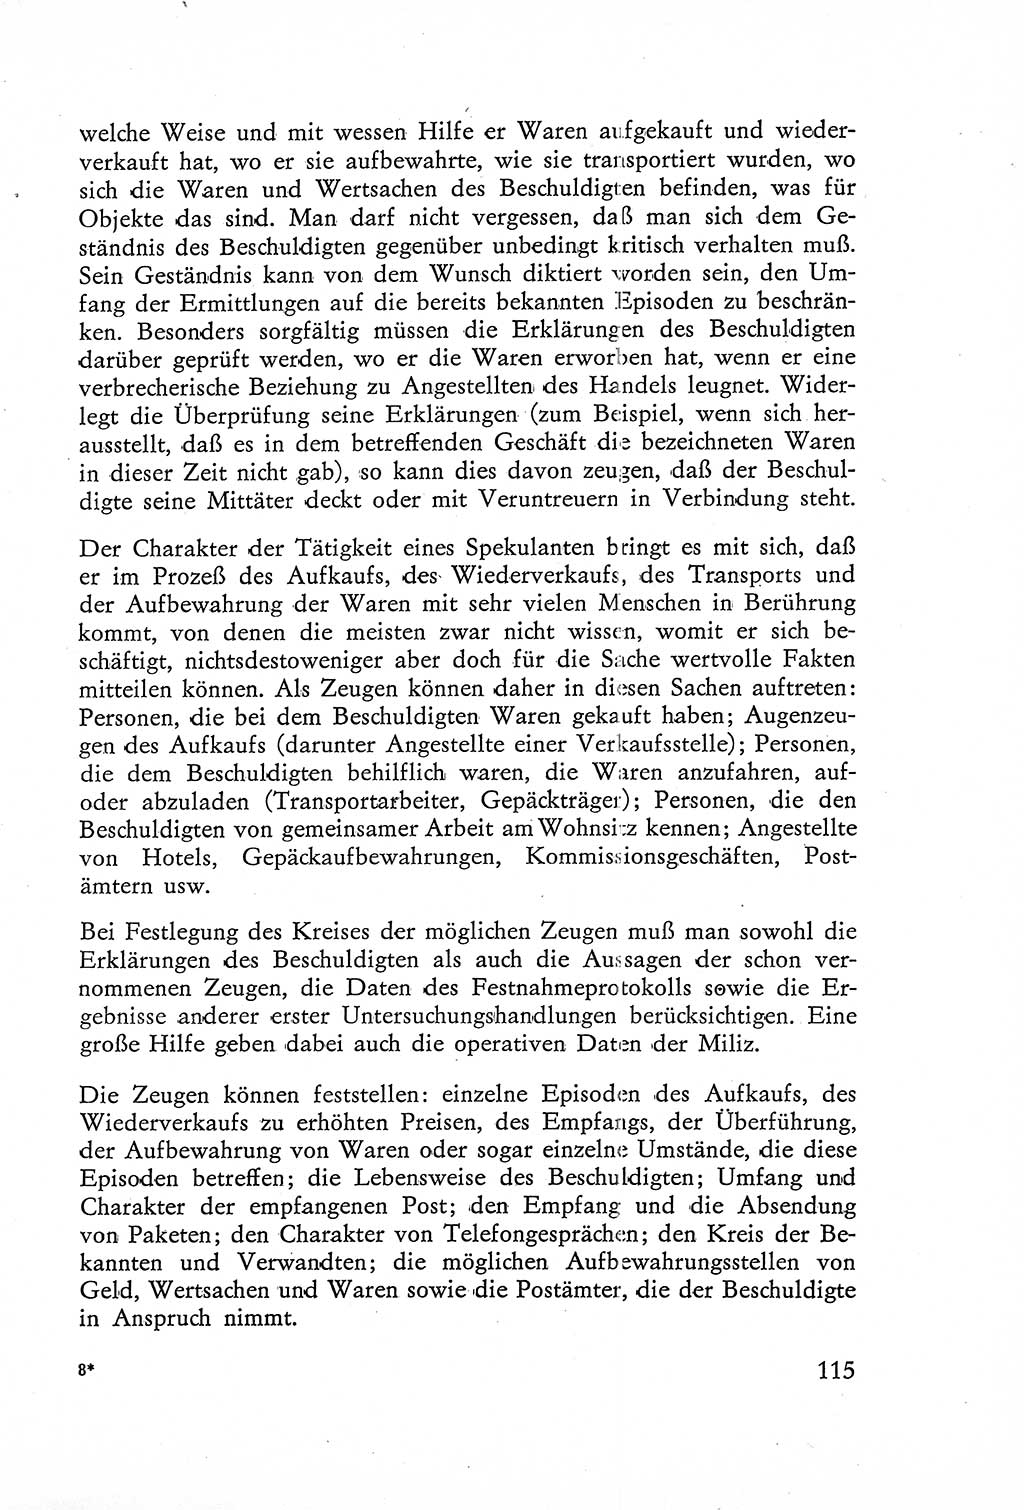 Die Untersuchung einzelner Verbrechensarten [Deutsche Demokratische Republik (DDR)] 1960, Seite 115 (Unters. Verbr.-Art. DDR 1960, S. 115)